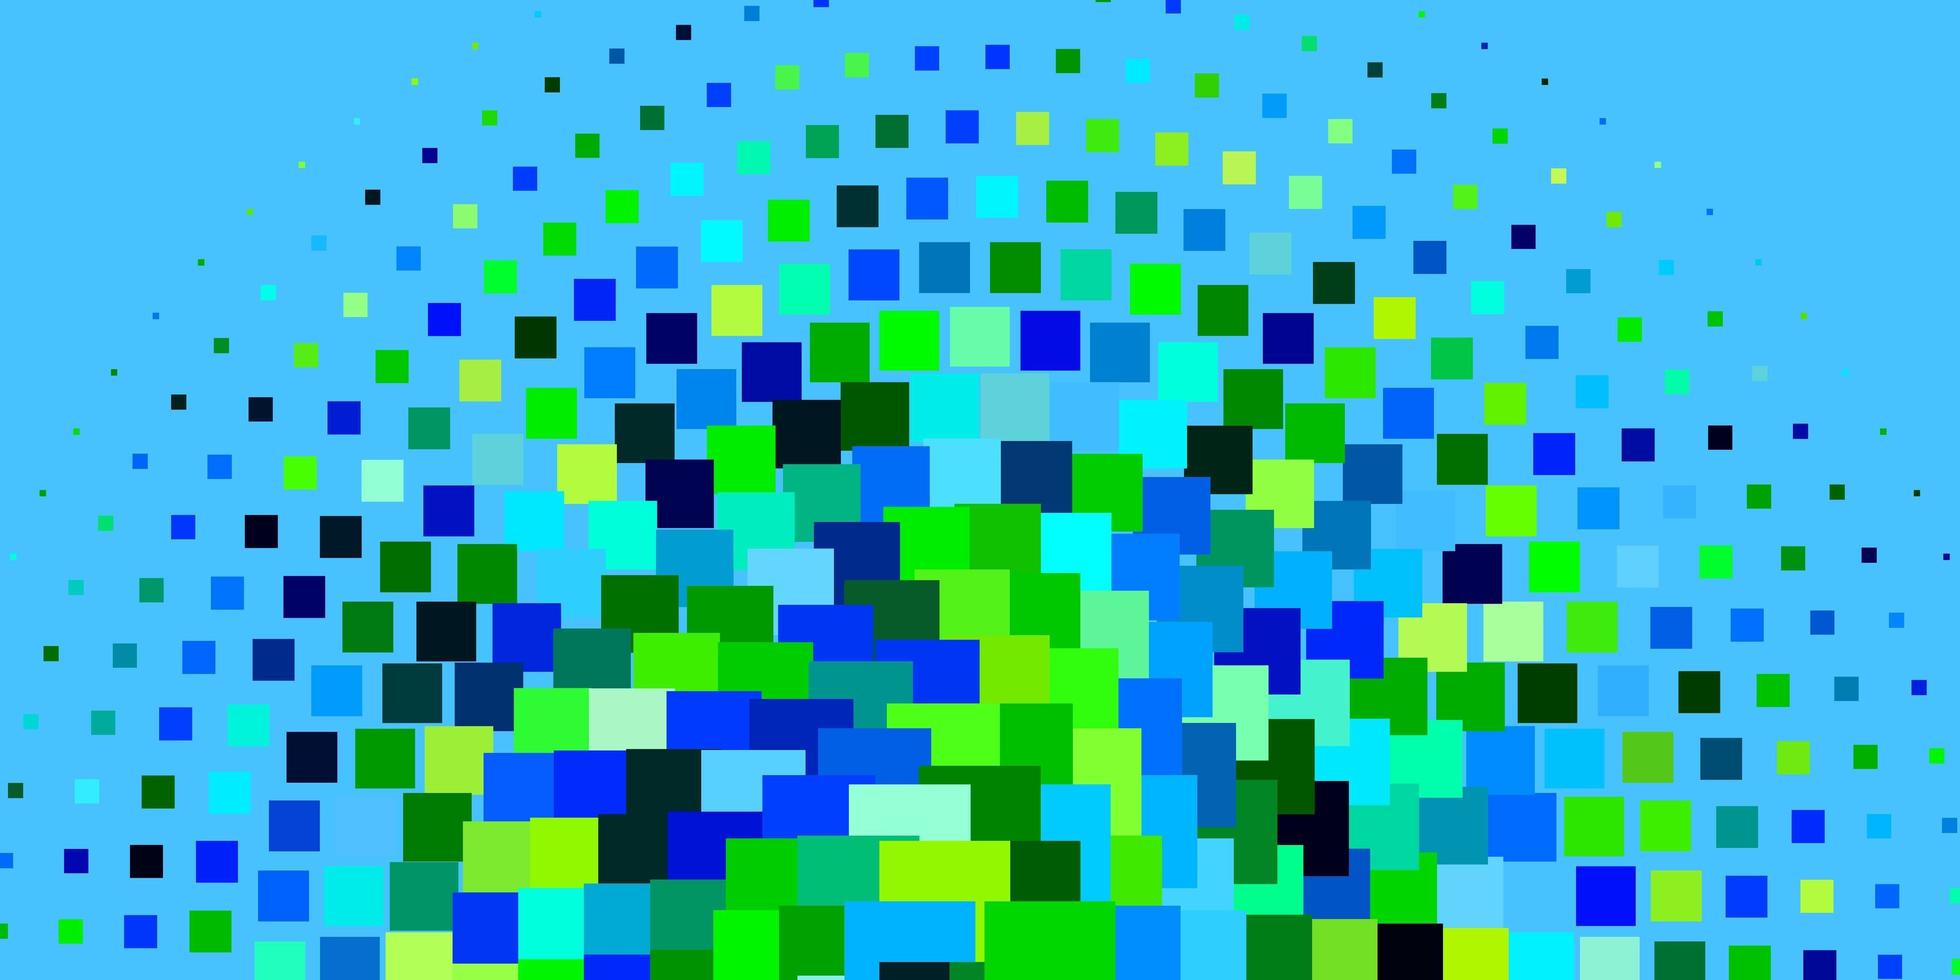 modèle vectoriel bleu clair, vert dans un style carré.